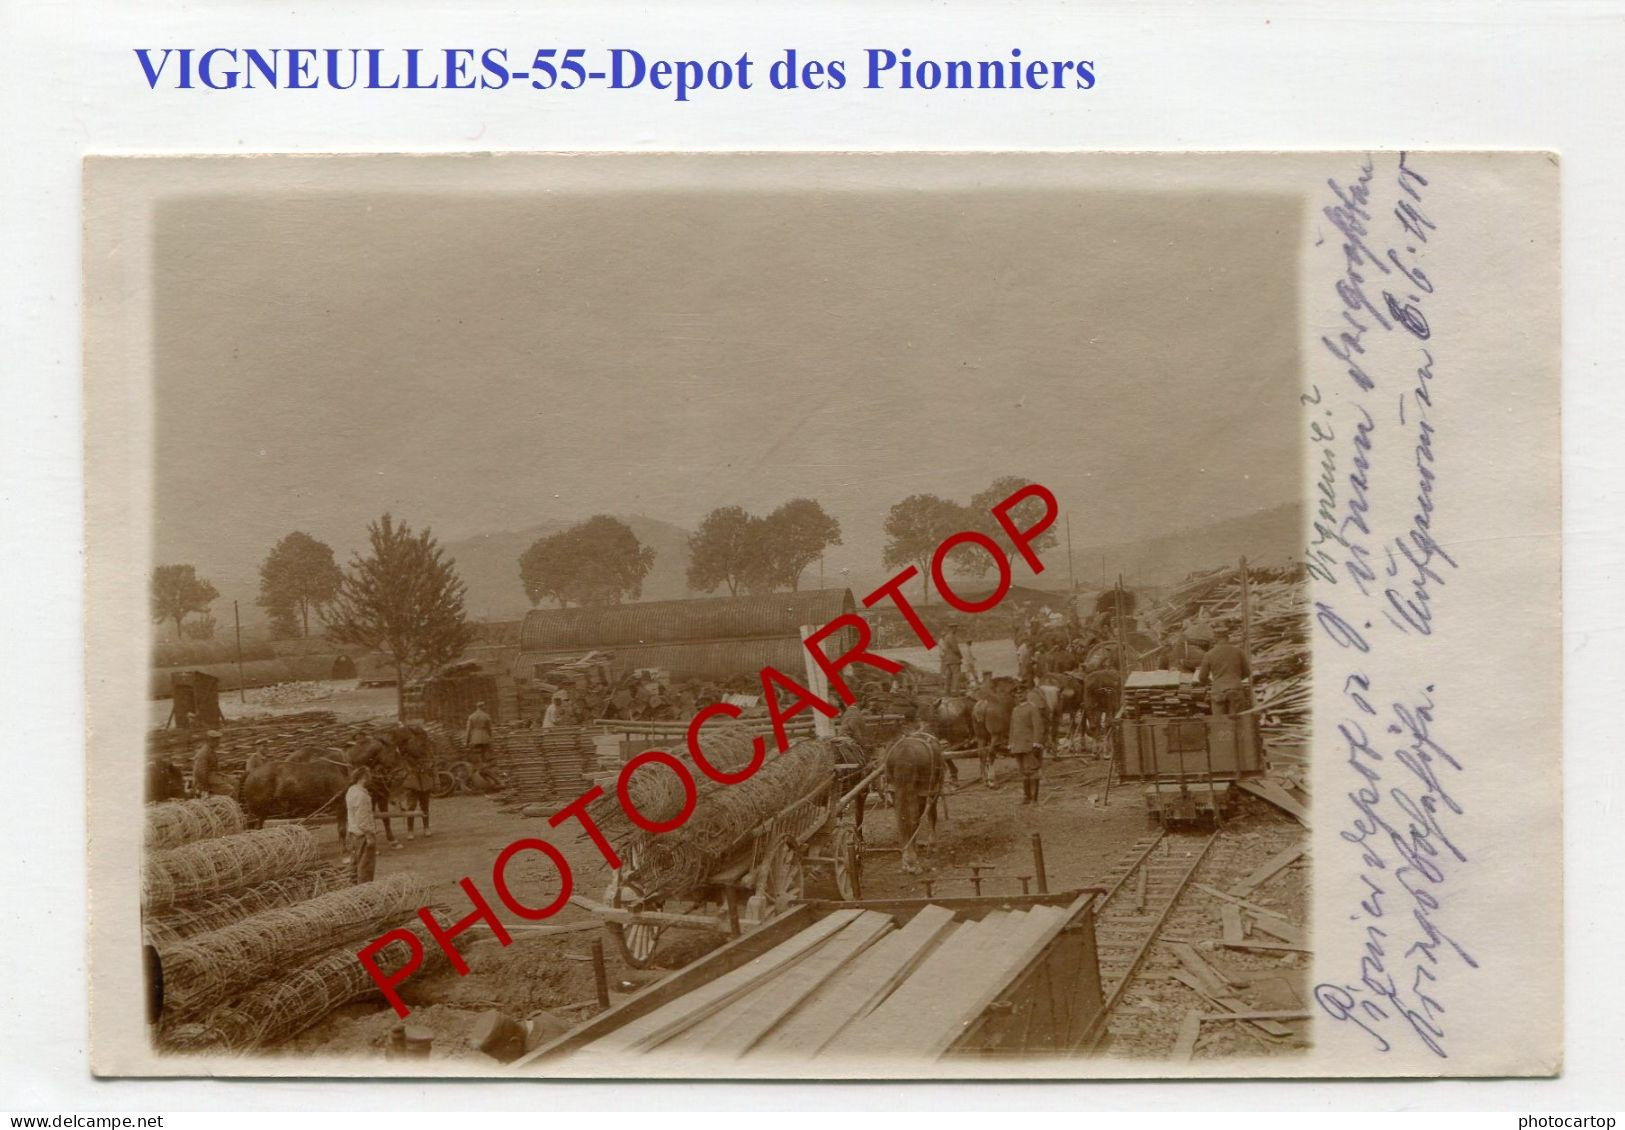 VIGNEULLES LES HATTONCHATEL-Depot Des Pionniers-CARTE PHOTO Allemande-GUERRE 14-18-1 WK-France-55-Militaria- - Vigneulles Les Hattonchatel